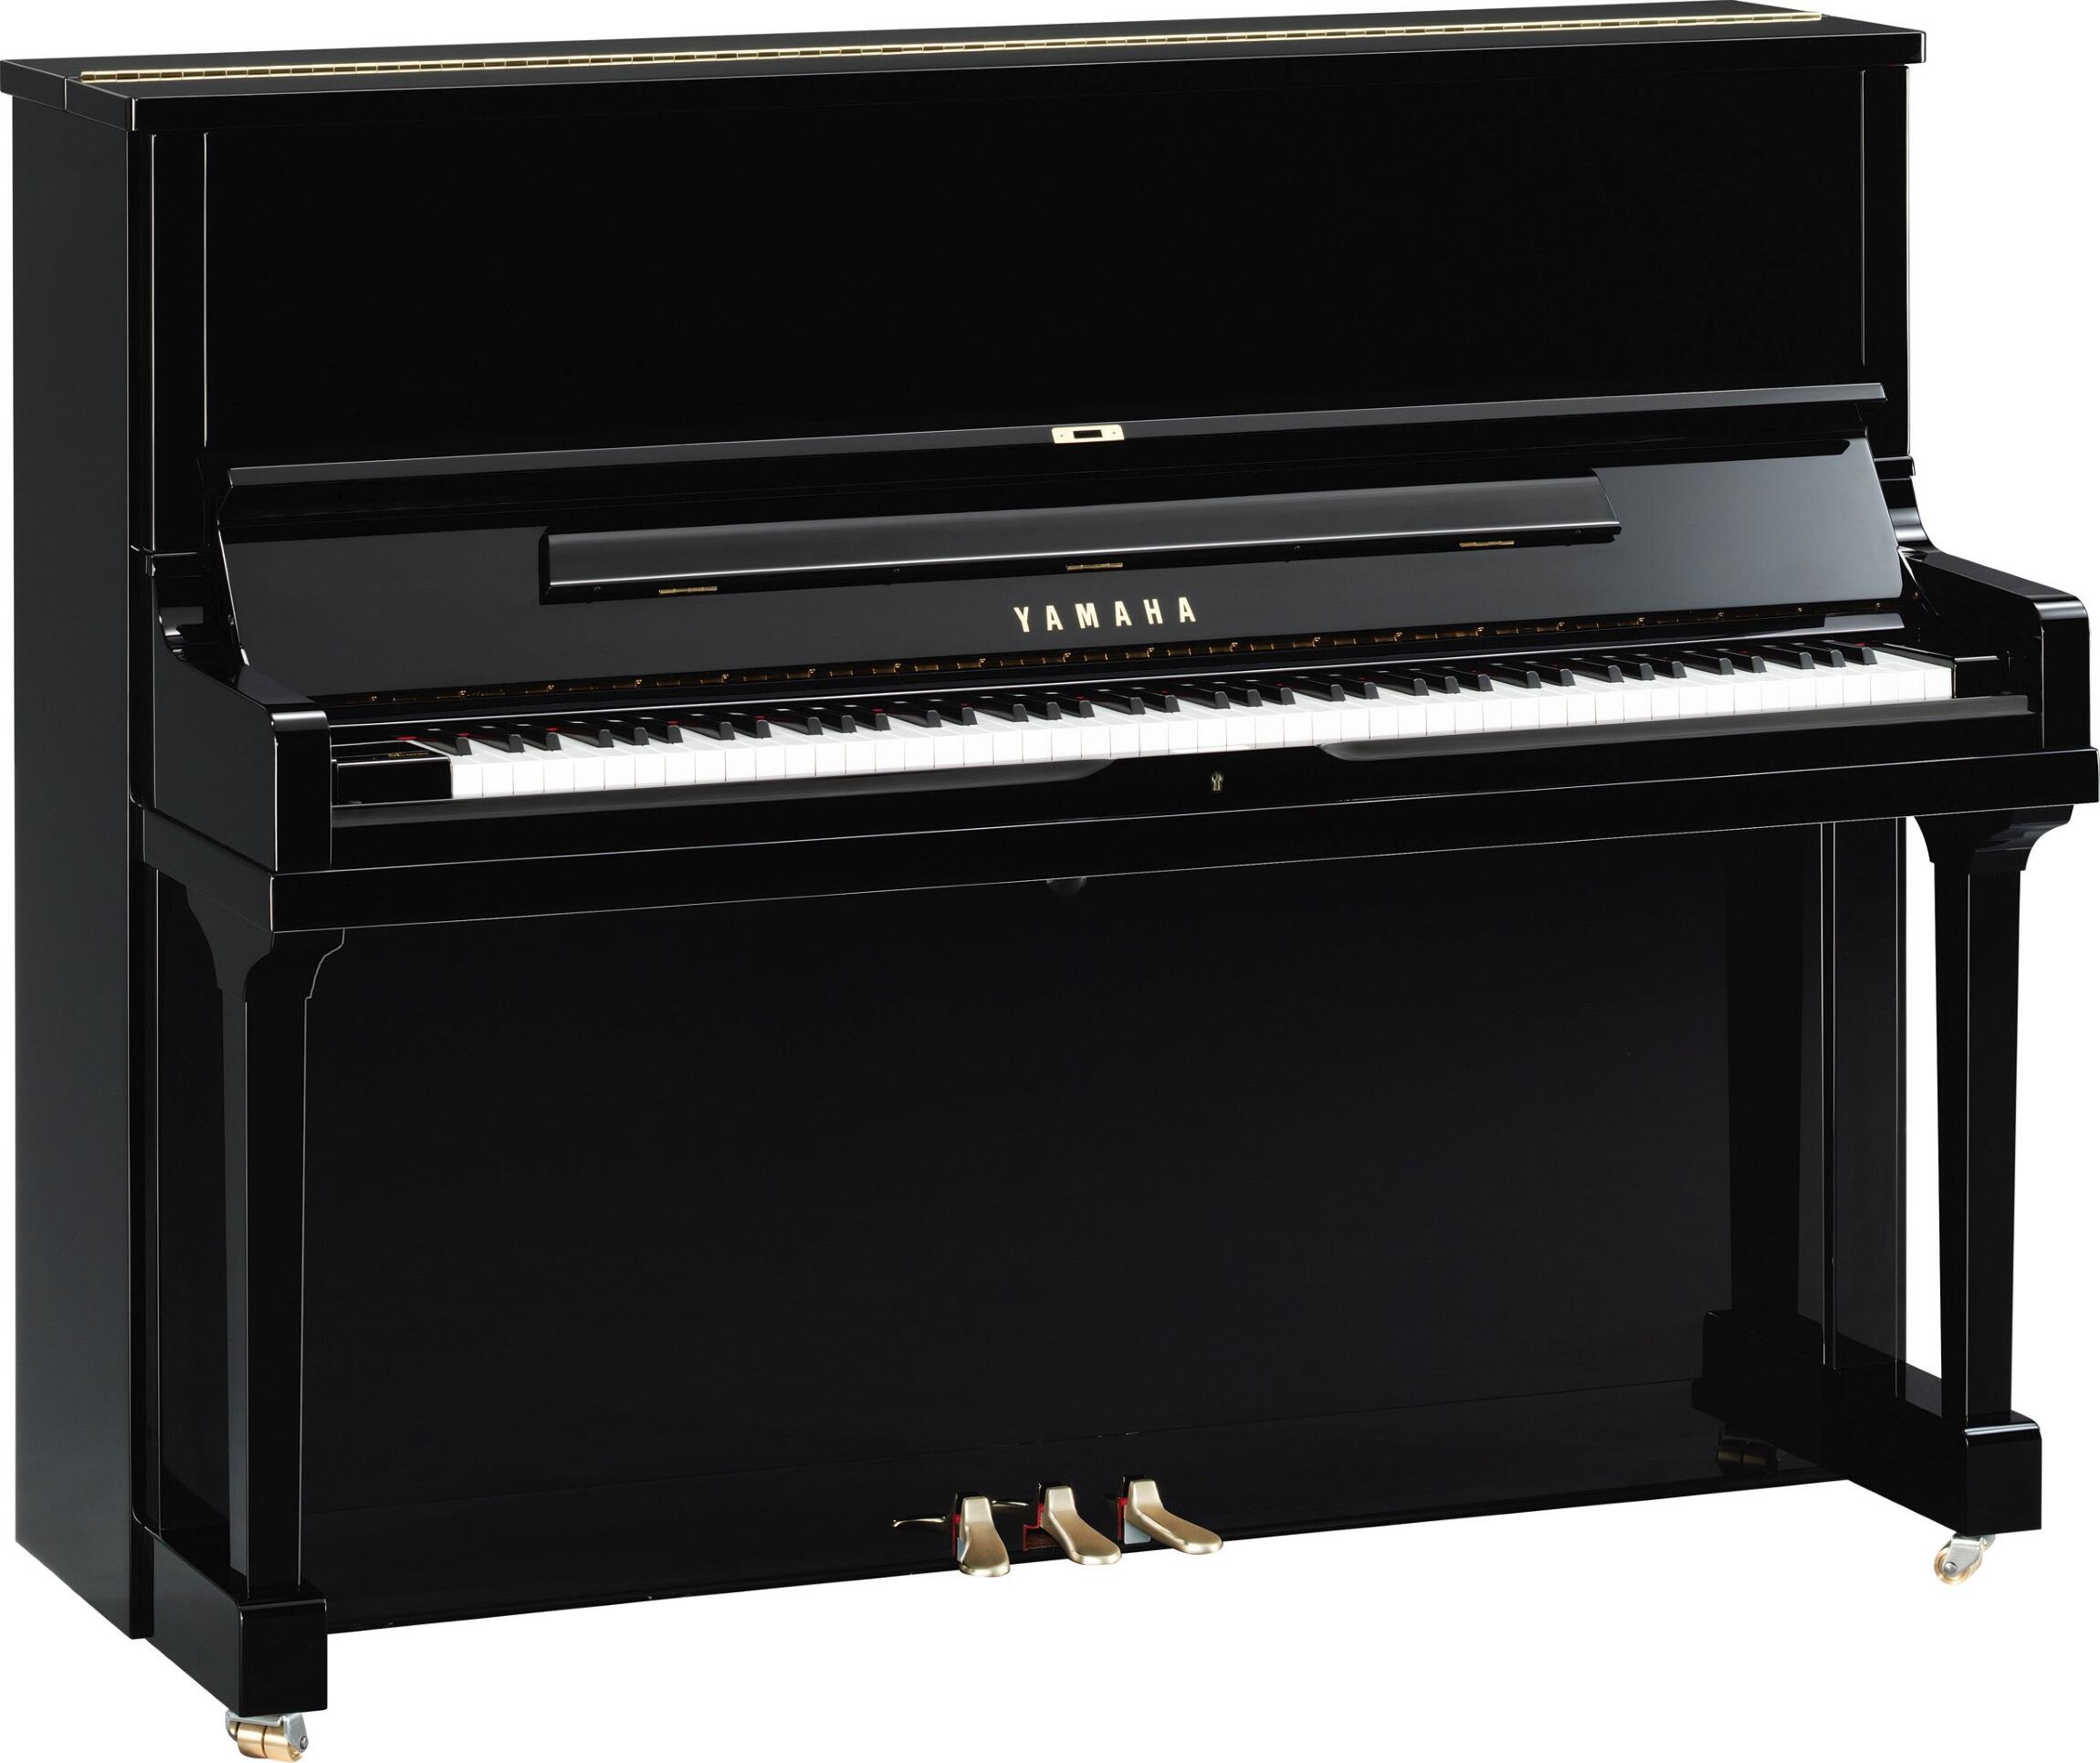 Yamaha Pianos Acoustic SE122 PE Noir poli-brillant 122 cm : photo 1